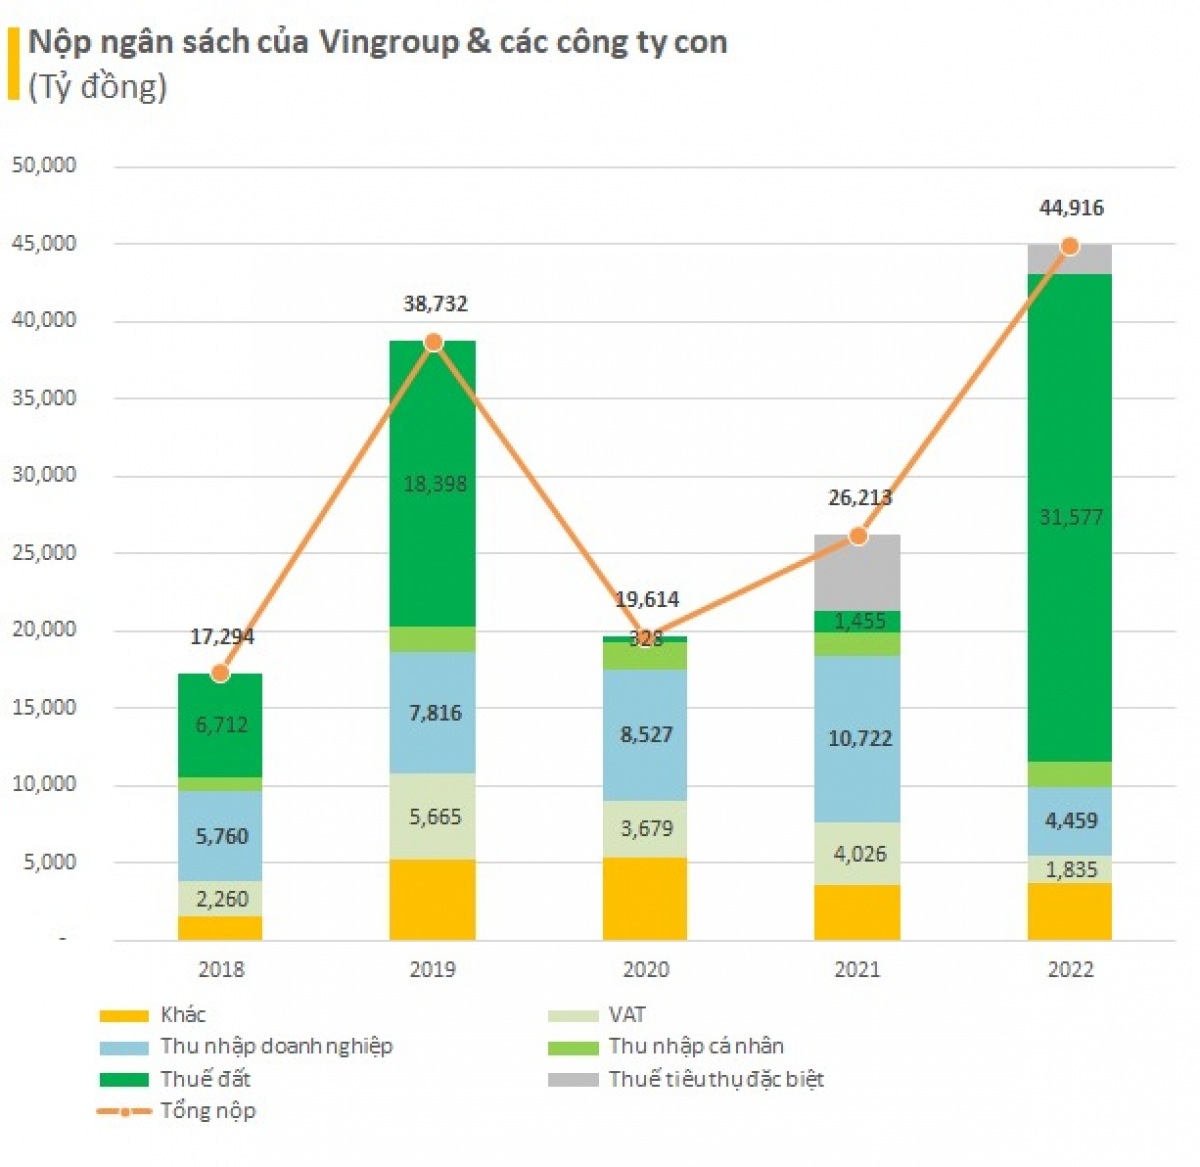 6 tỷ phú USD người Việt đã nộp ngân sách bao nhiêu?